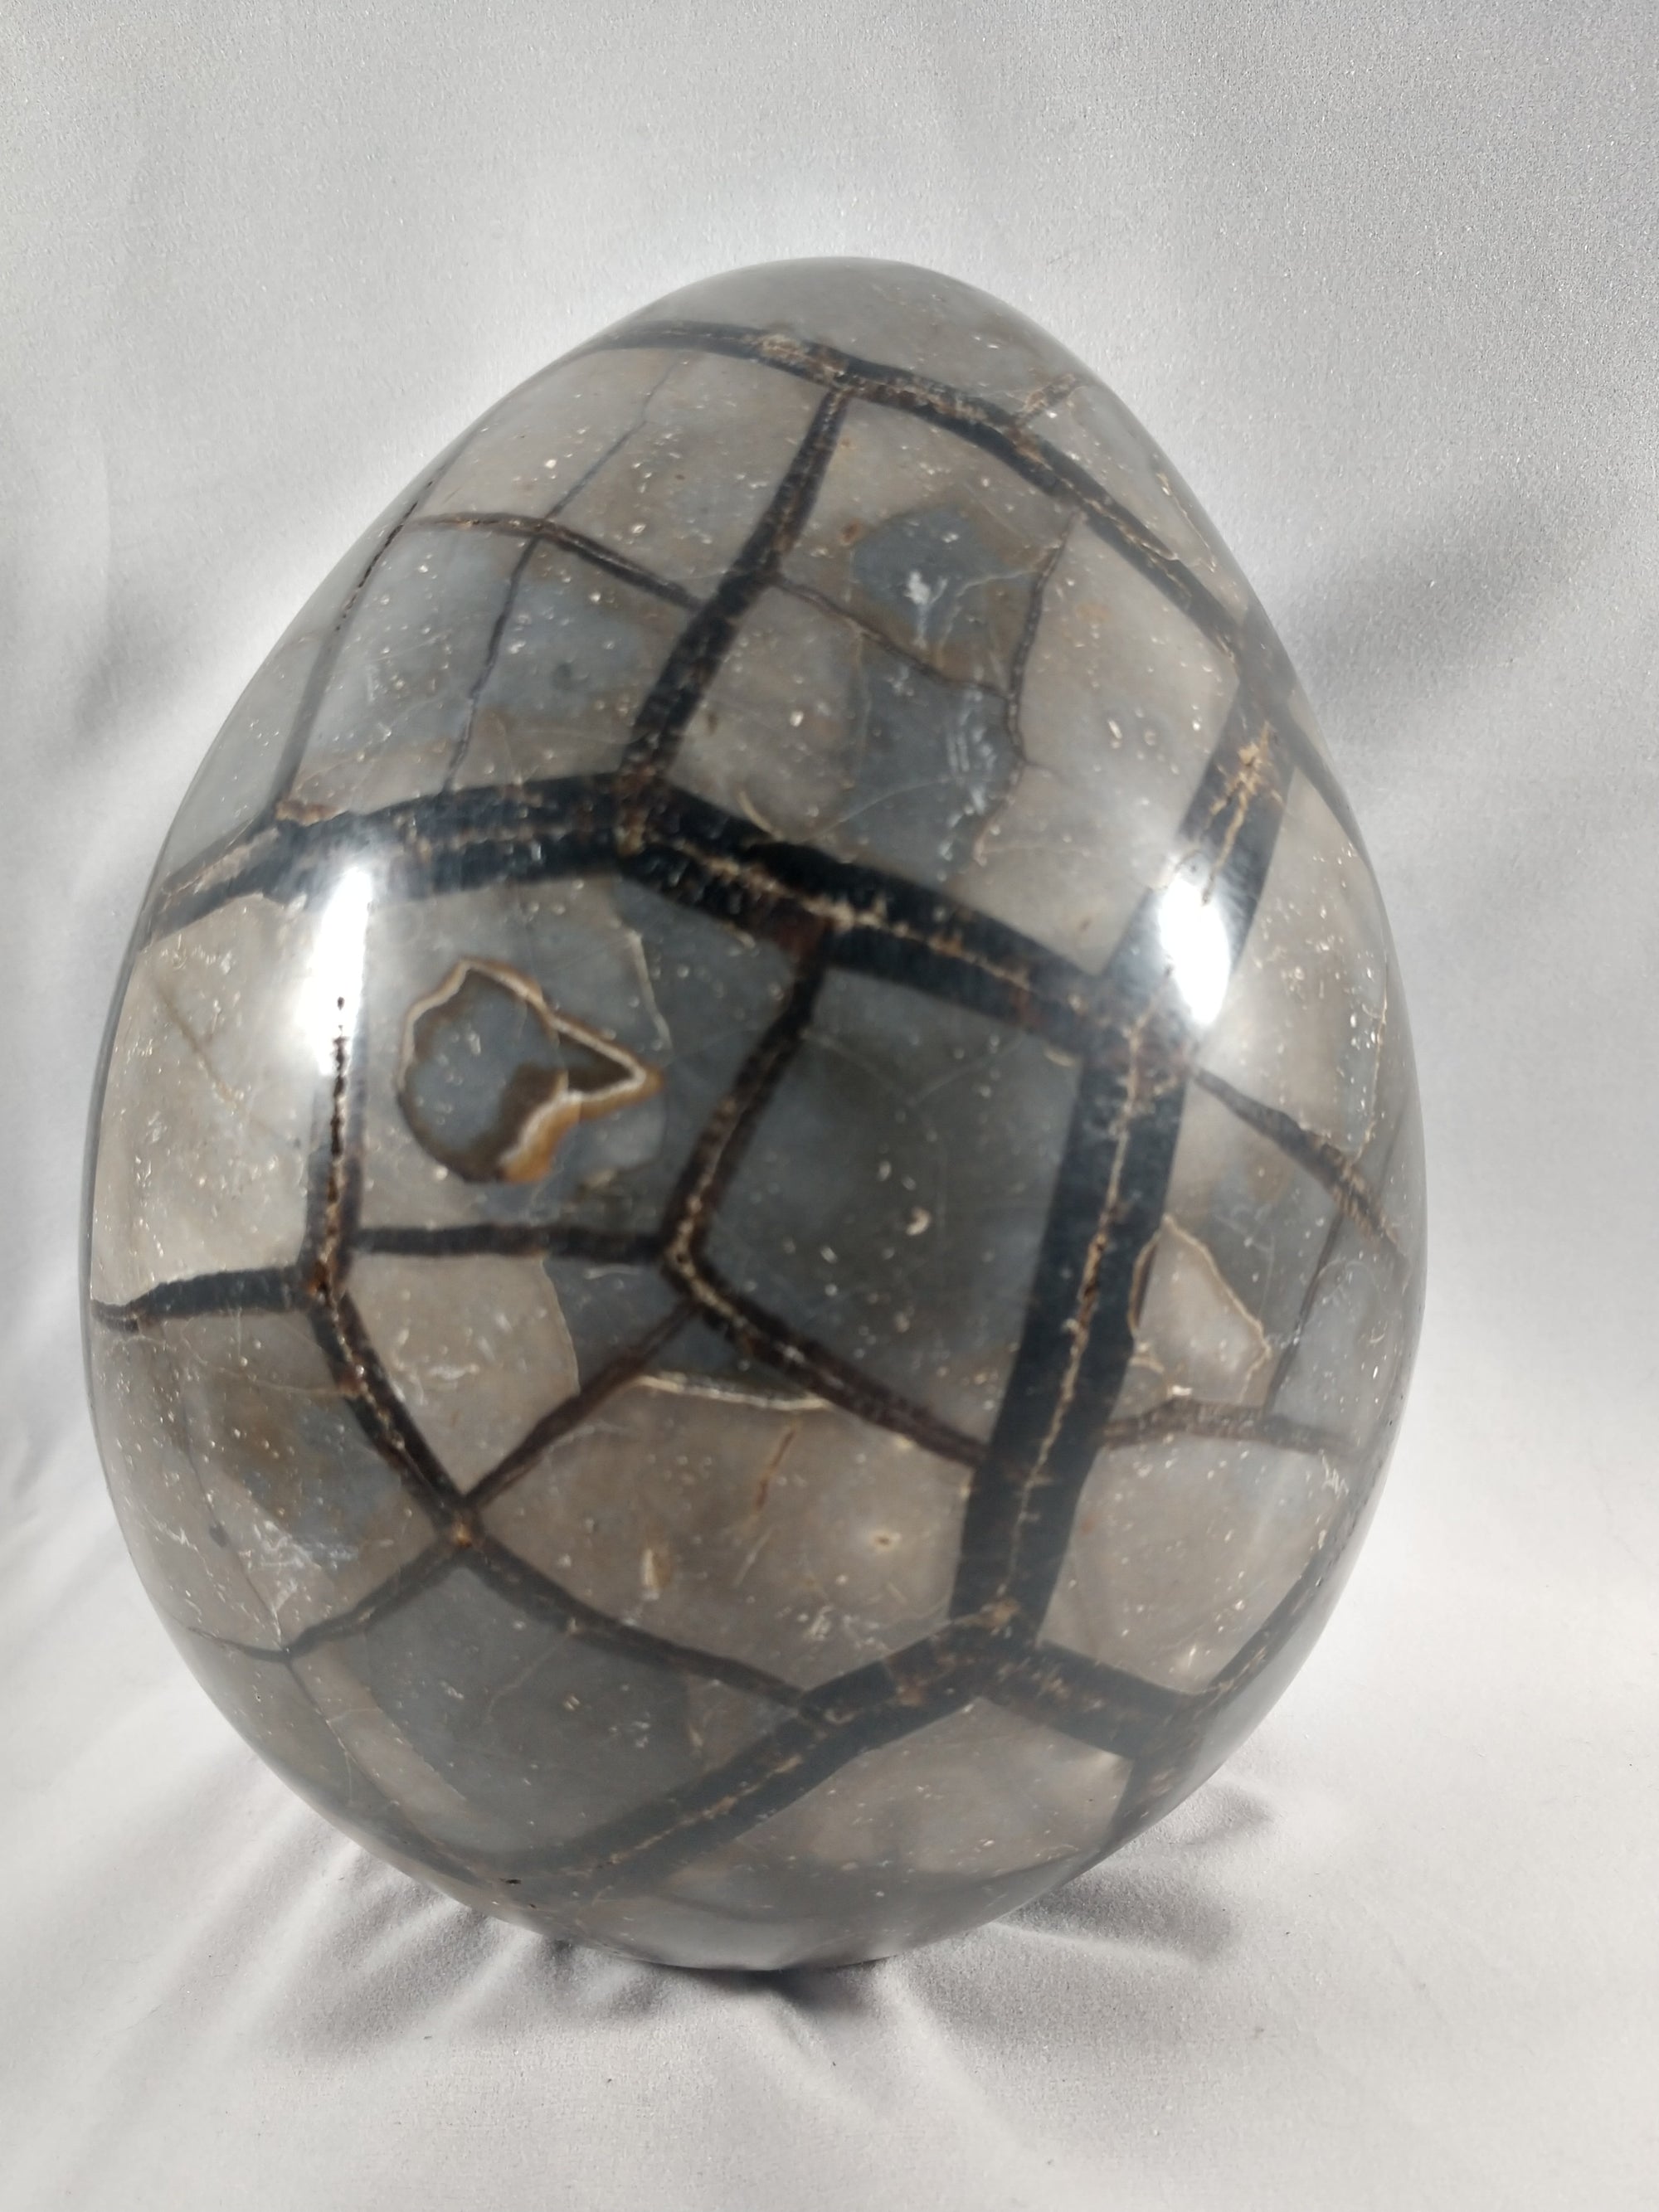 Septerian Egg, Madagascar